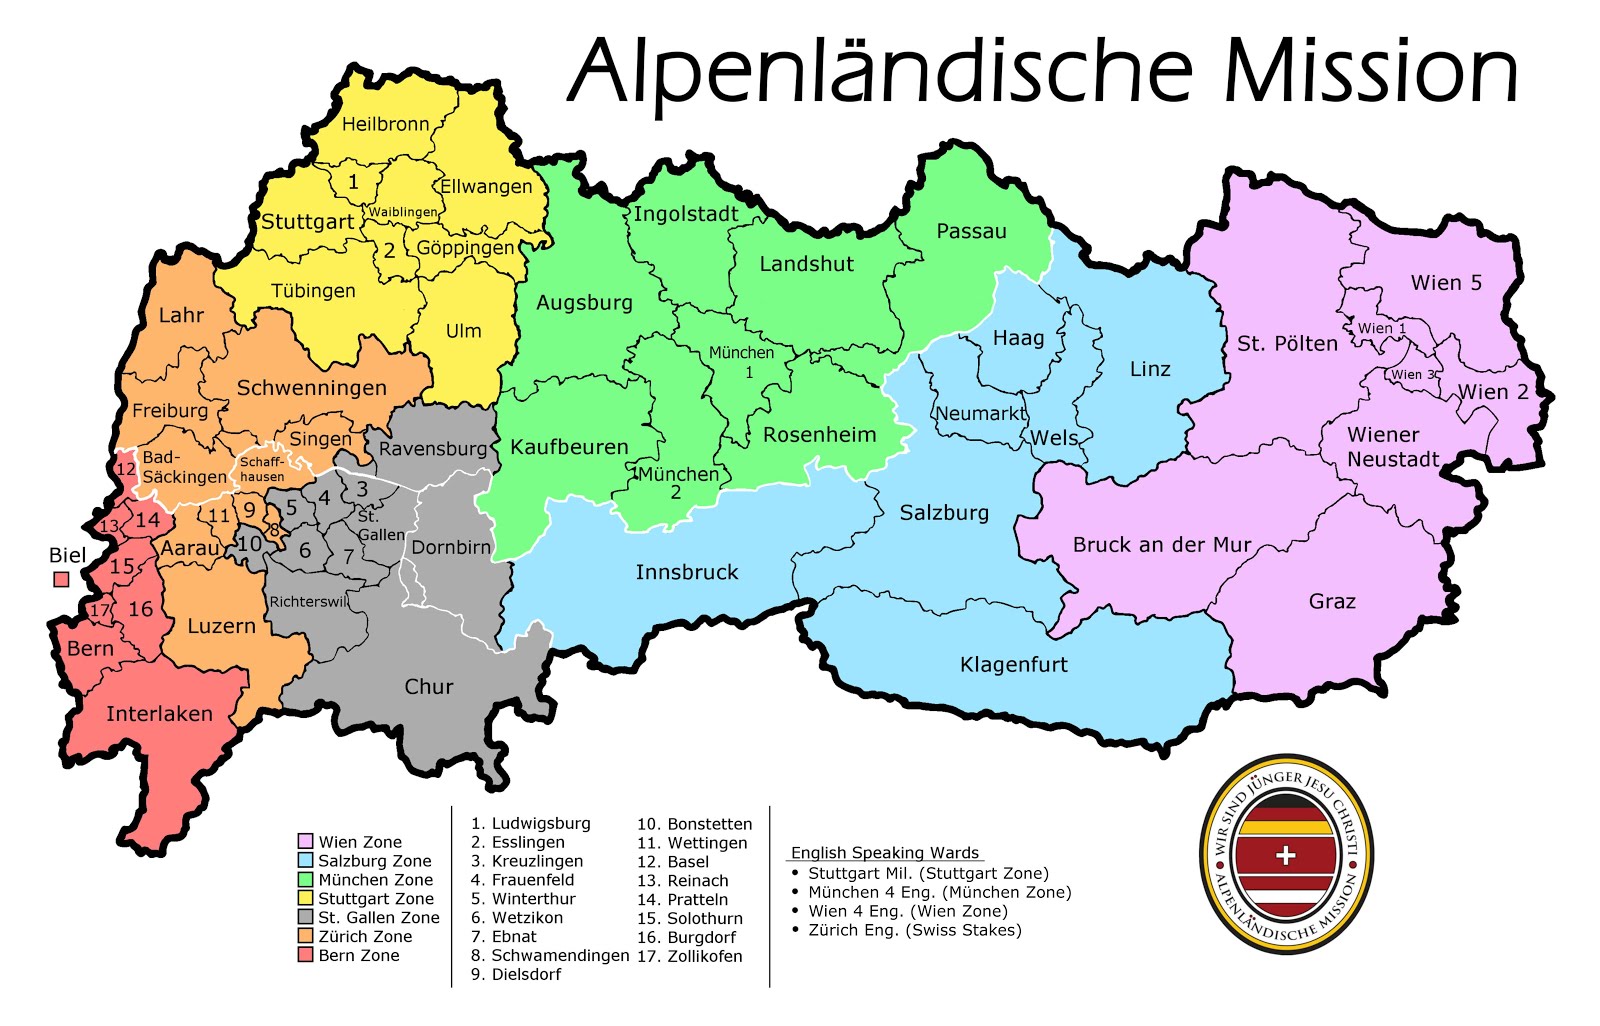 Alpenländische Mission Zones/Stakes Map